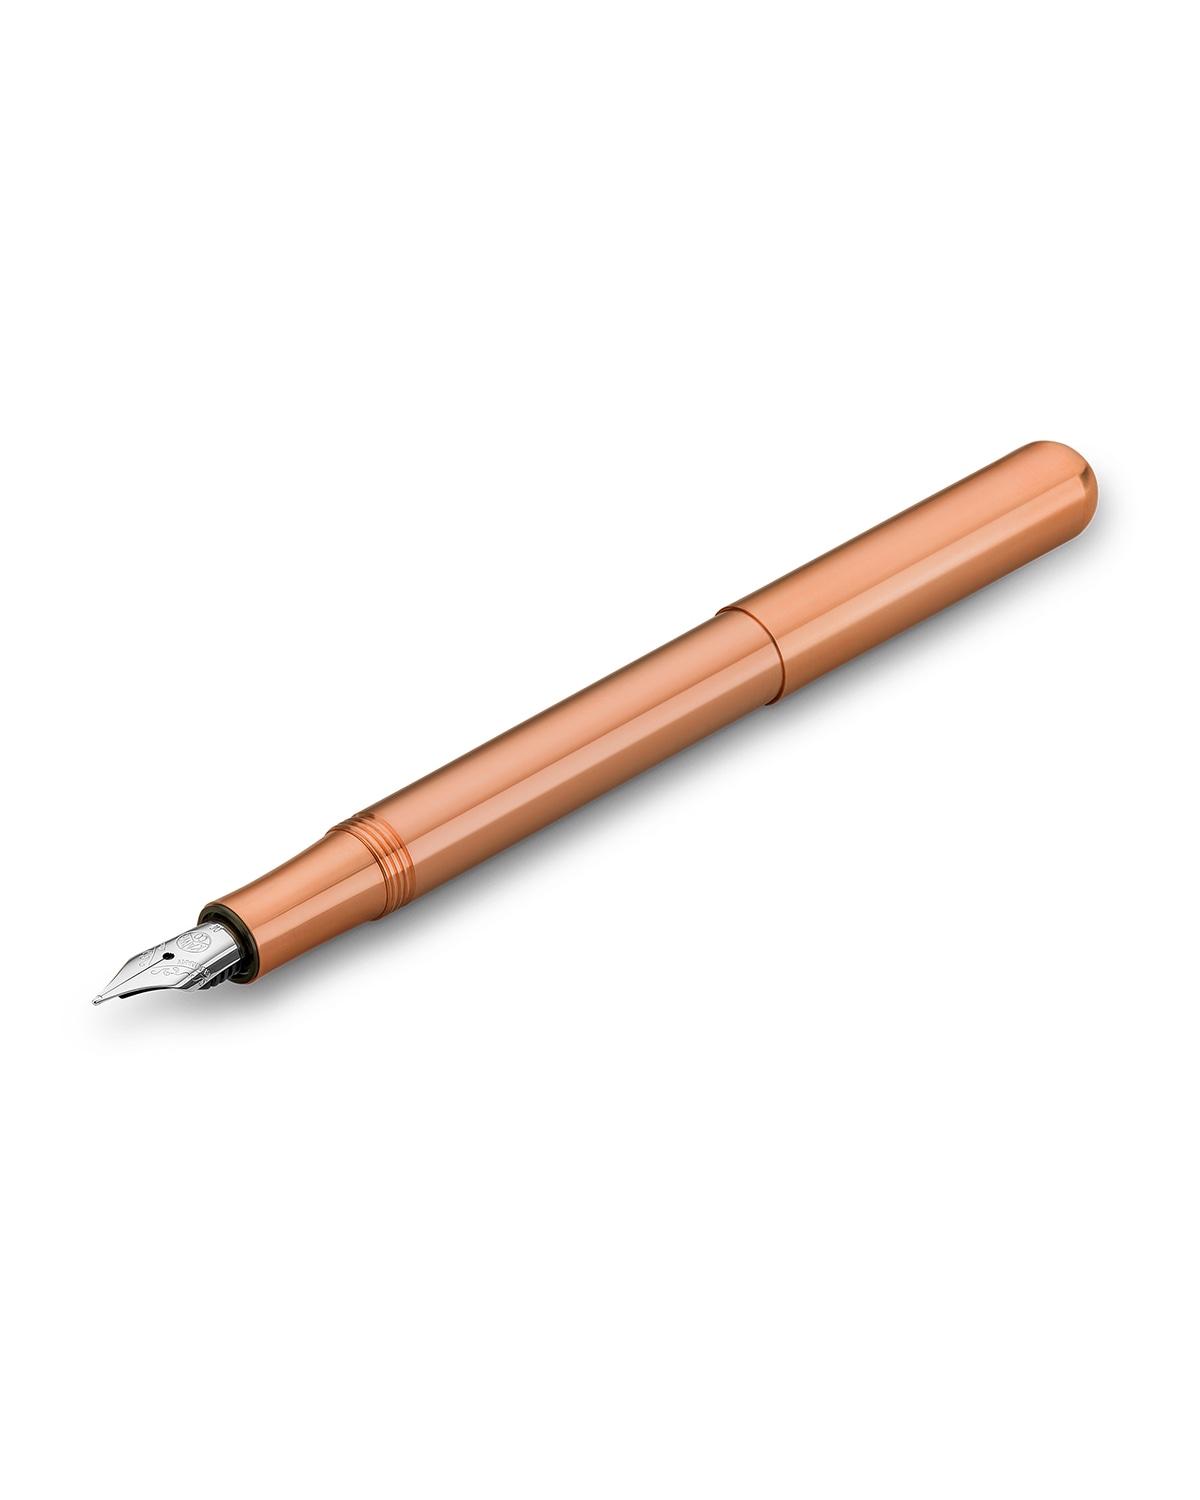 Ручка перьевая KAWECO LILIPUT Copper Медный 5 вариантов пера